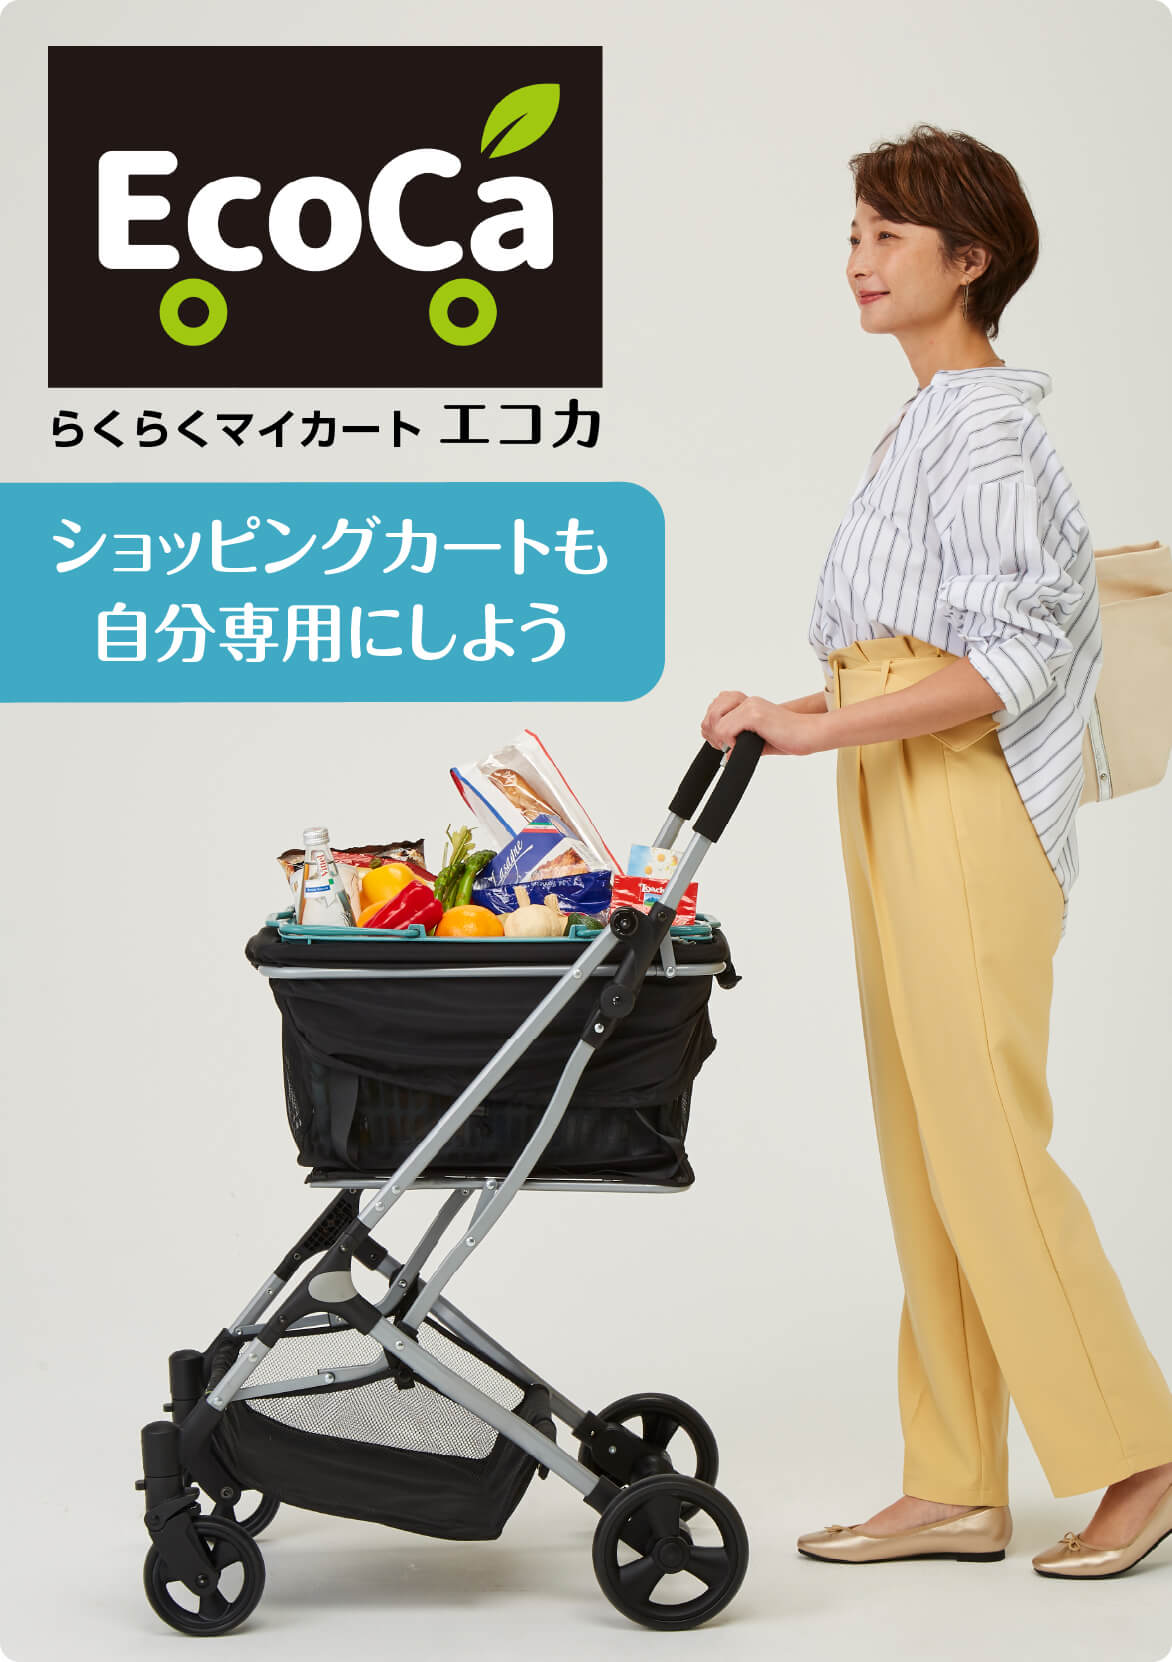 特売 (展示品) ecoca エコカ マイカート マイショッピングカート